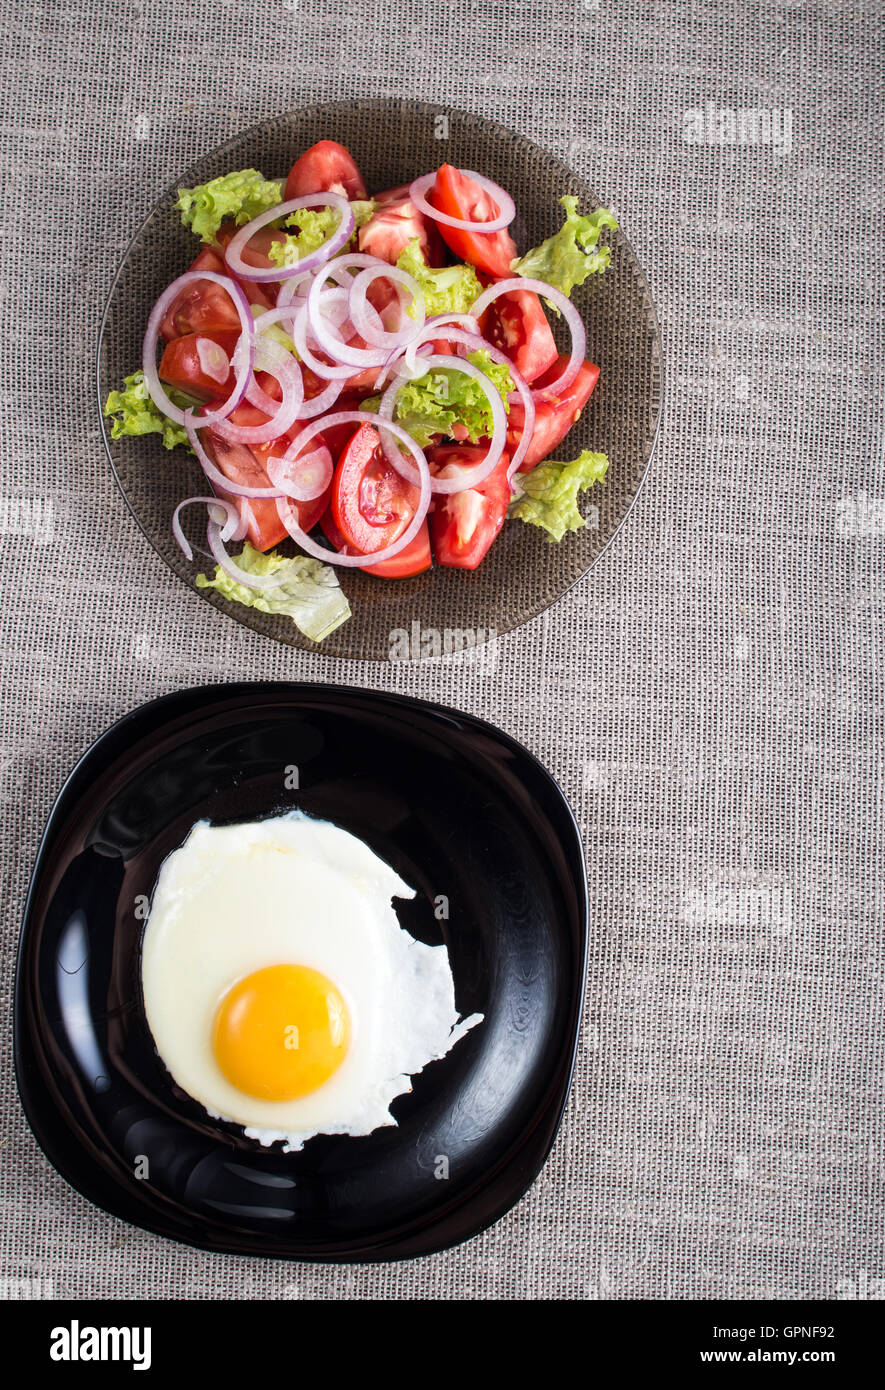 Vue de dessus d'un petit-déjeuner maison saine d'œufs sur le plat et une salade de tomates hachées dans une assiette sur la table d'examen Banque D'Images